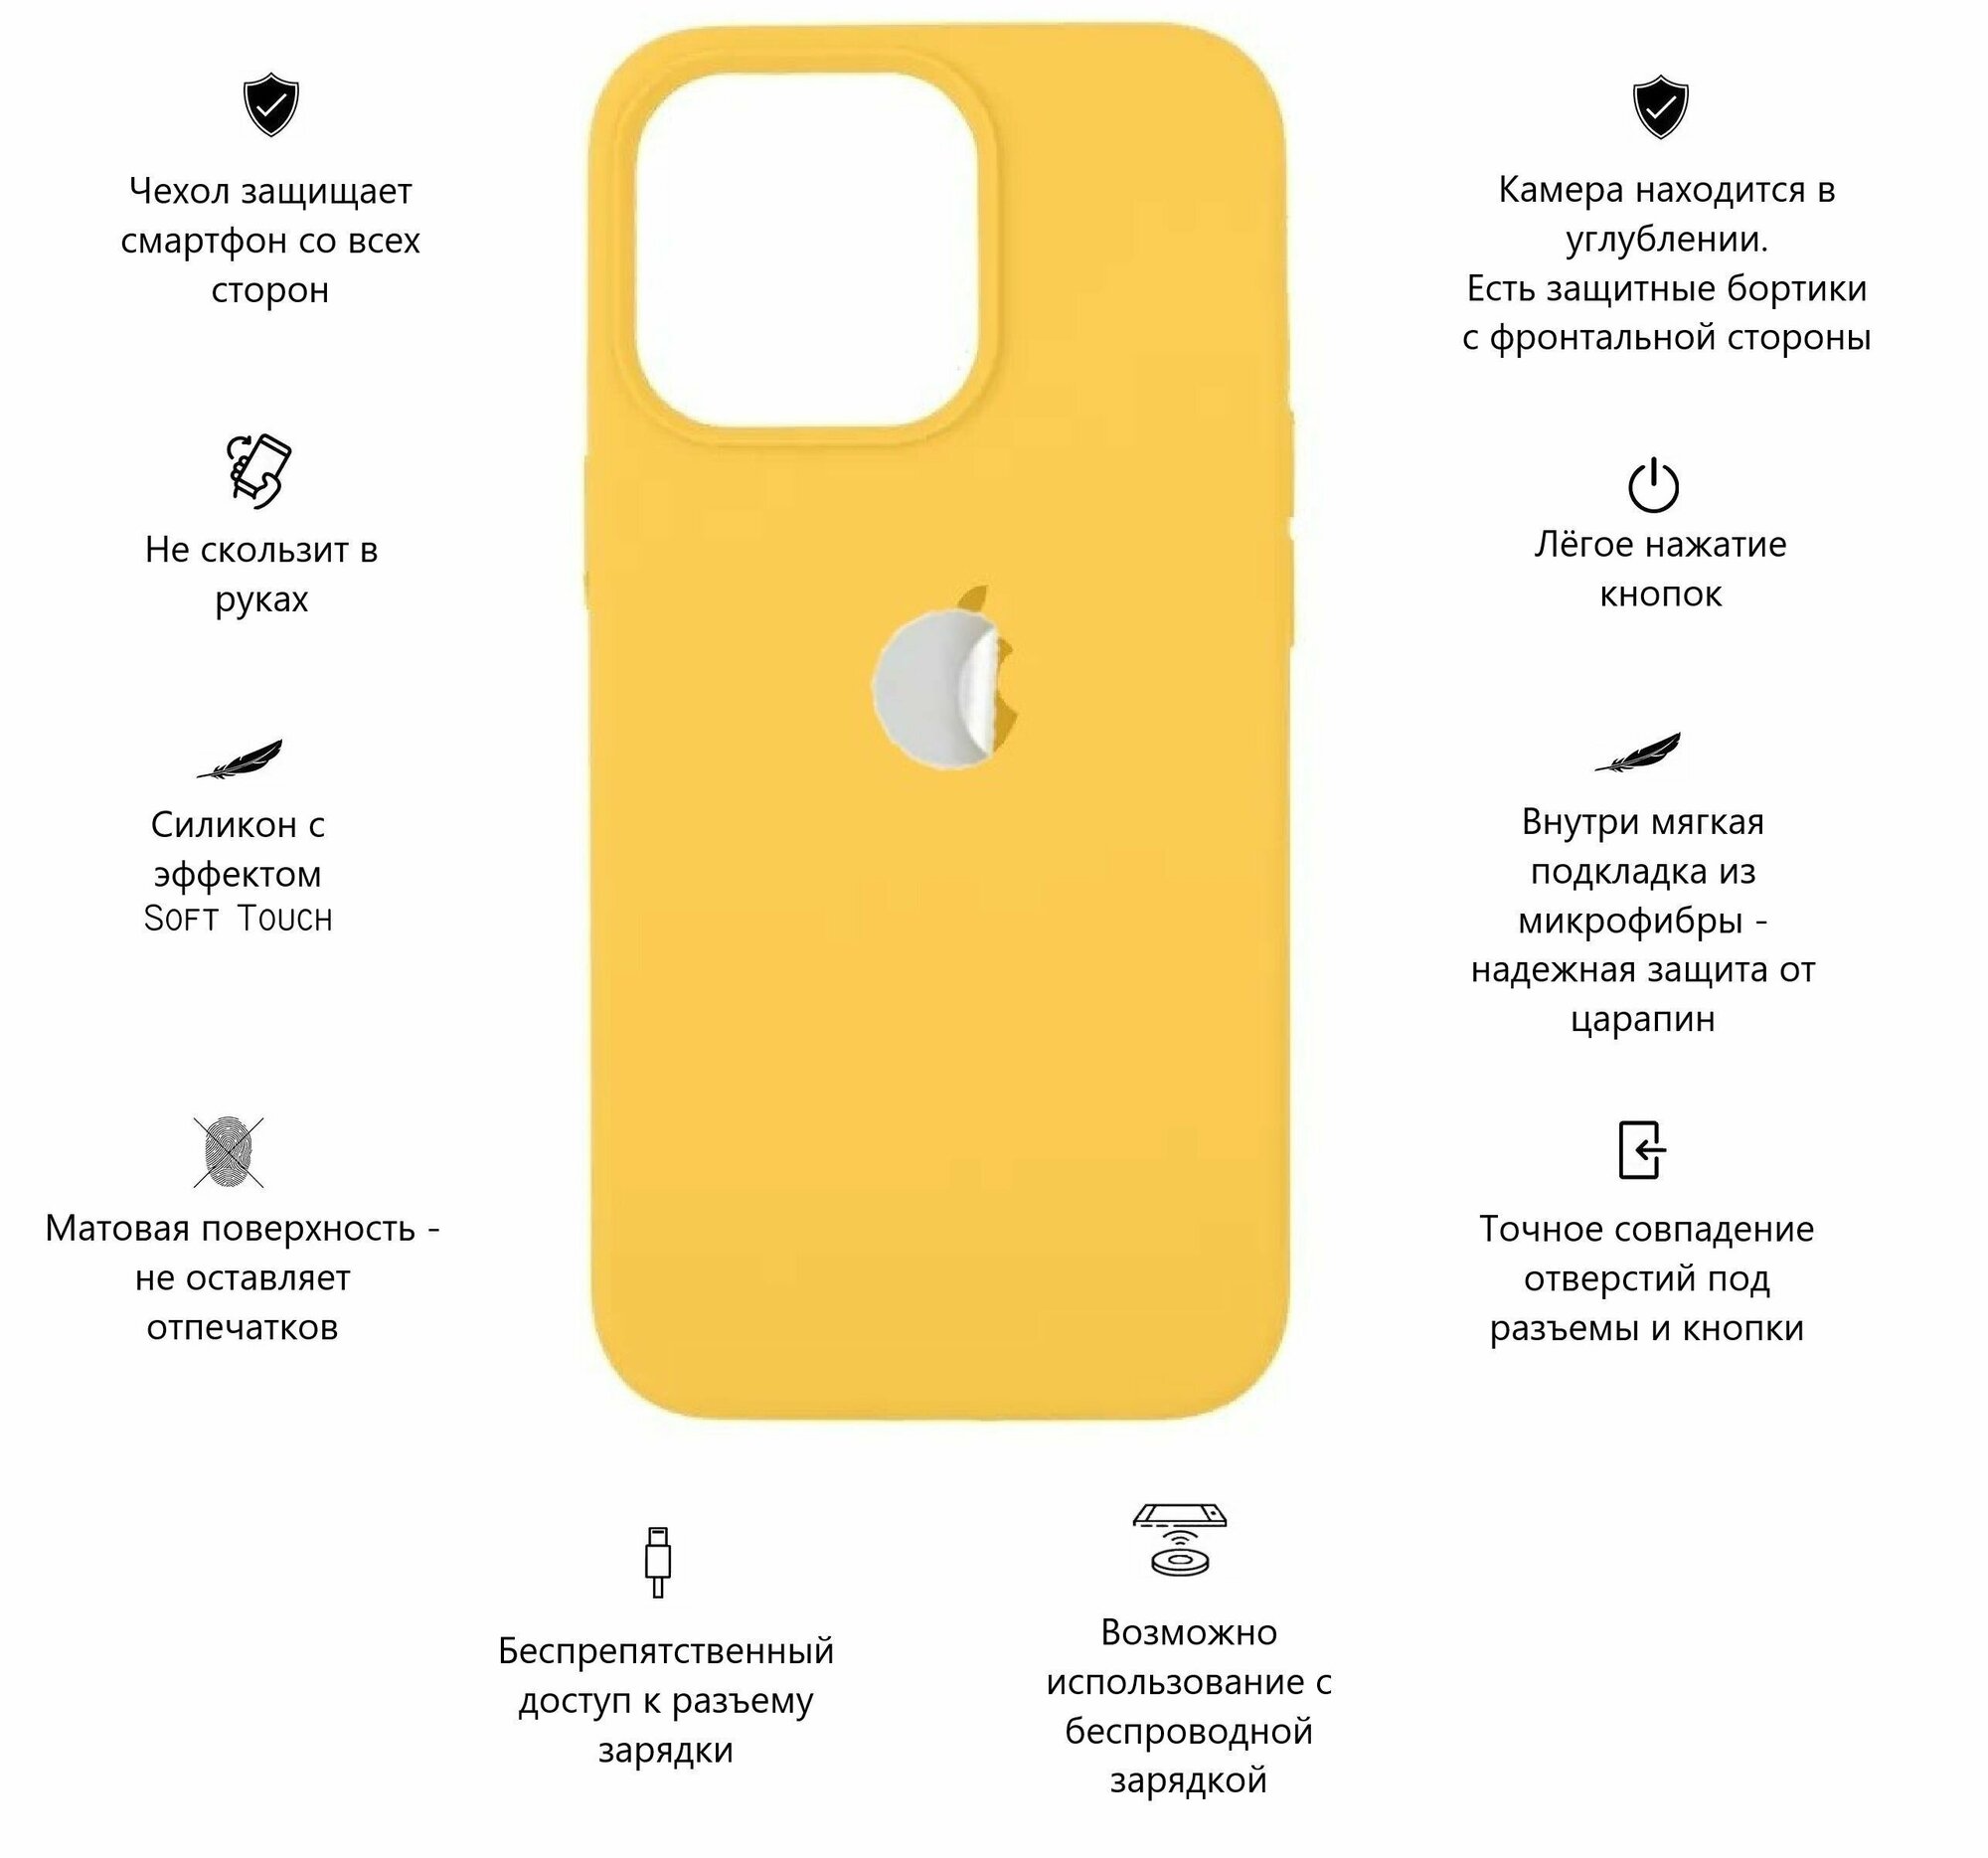 Силиконовый чехол с эффектом Soft Touch для iPhone 13 Pro с логотипом/ Айфон 13 Про, цвет желтый